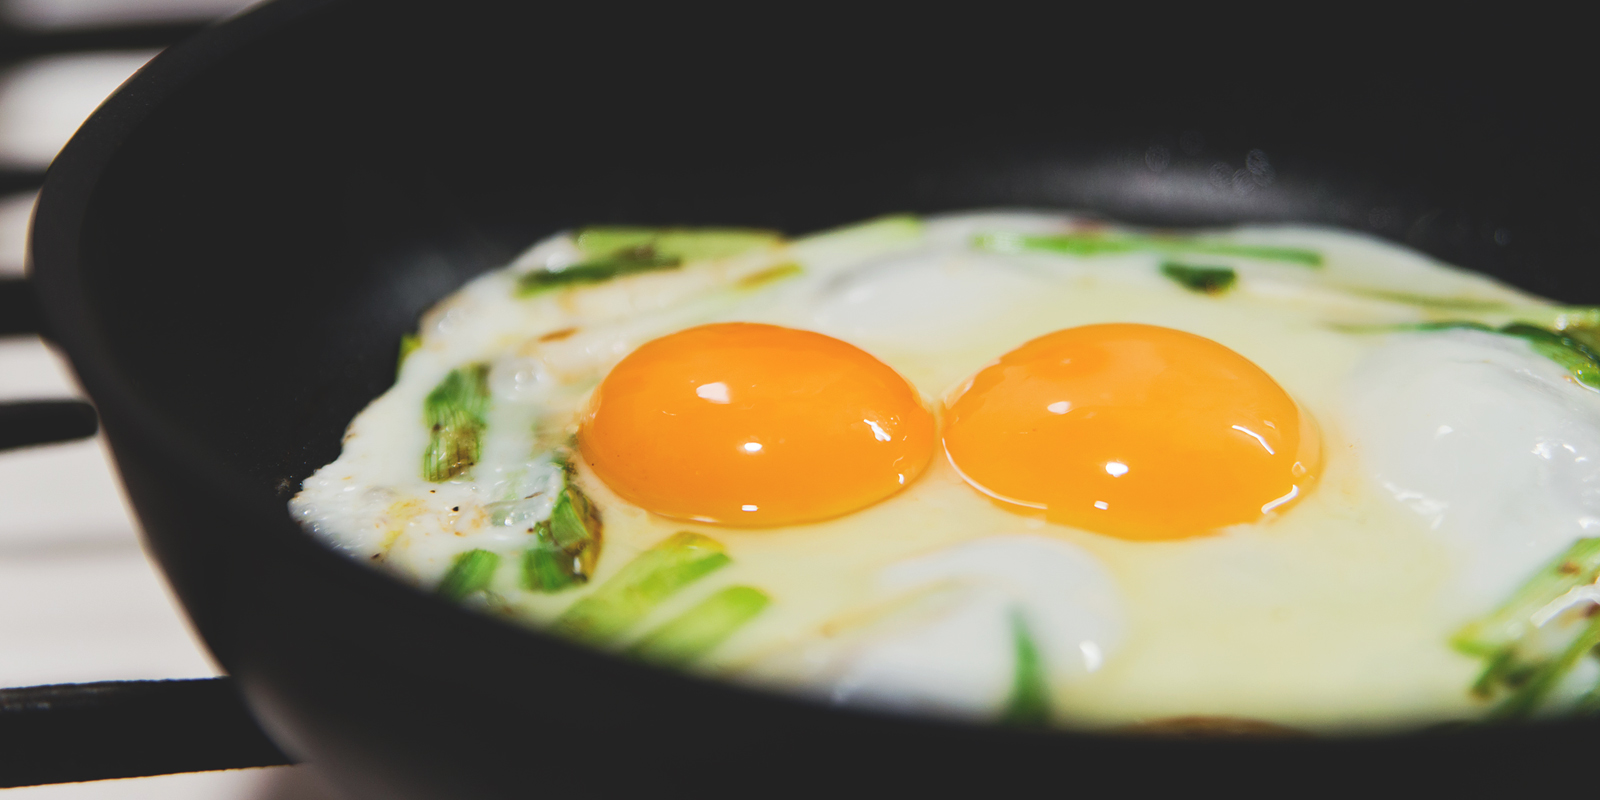 Яичница с зелёным луком: выпустите в сковородку яйца